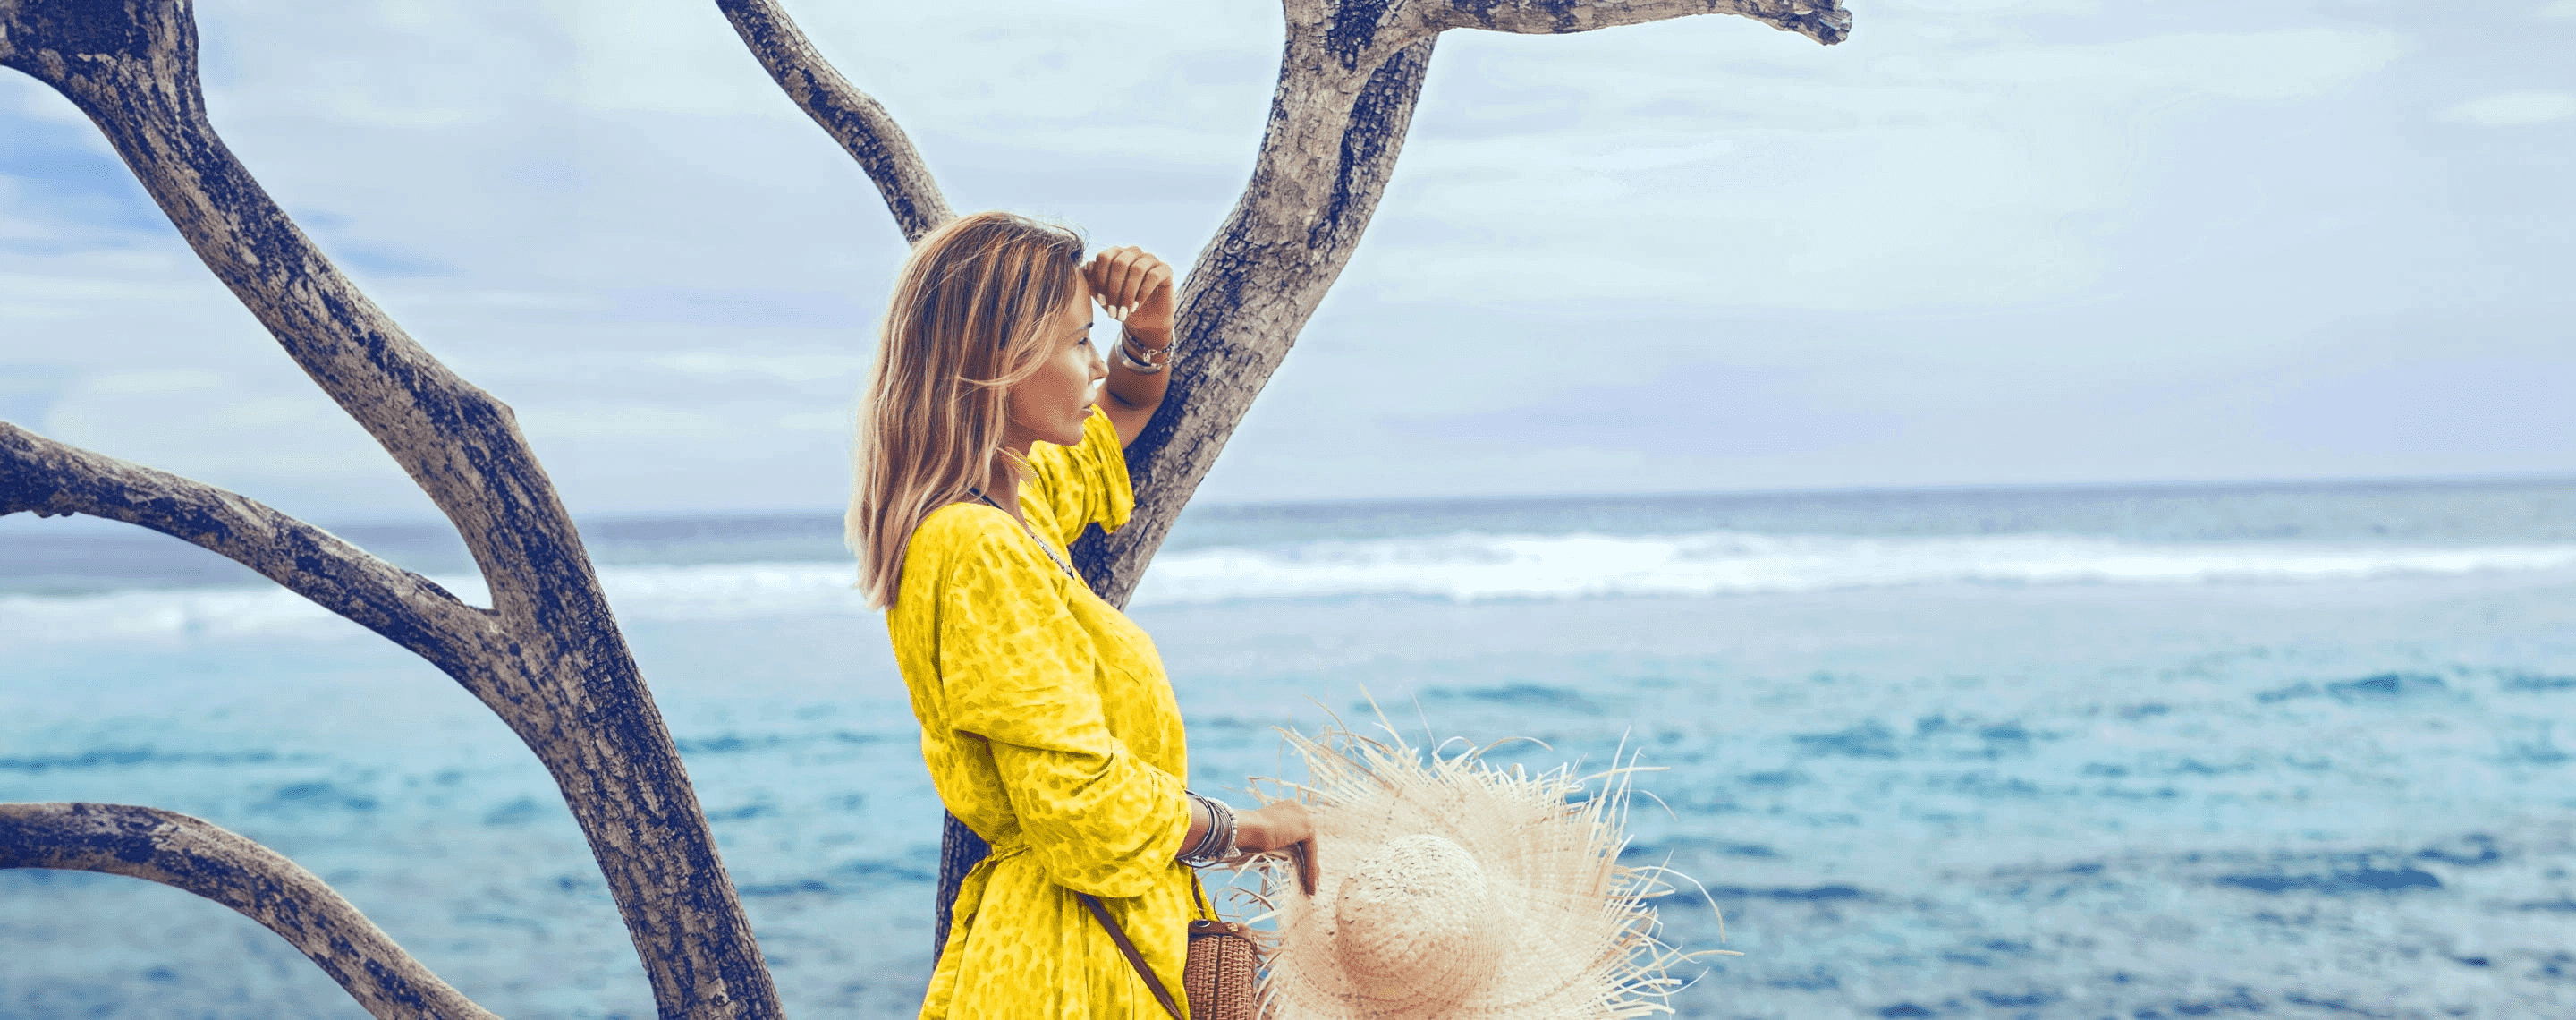 Frau mit gelben Kleid blickt übers Meer